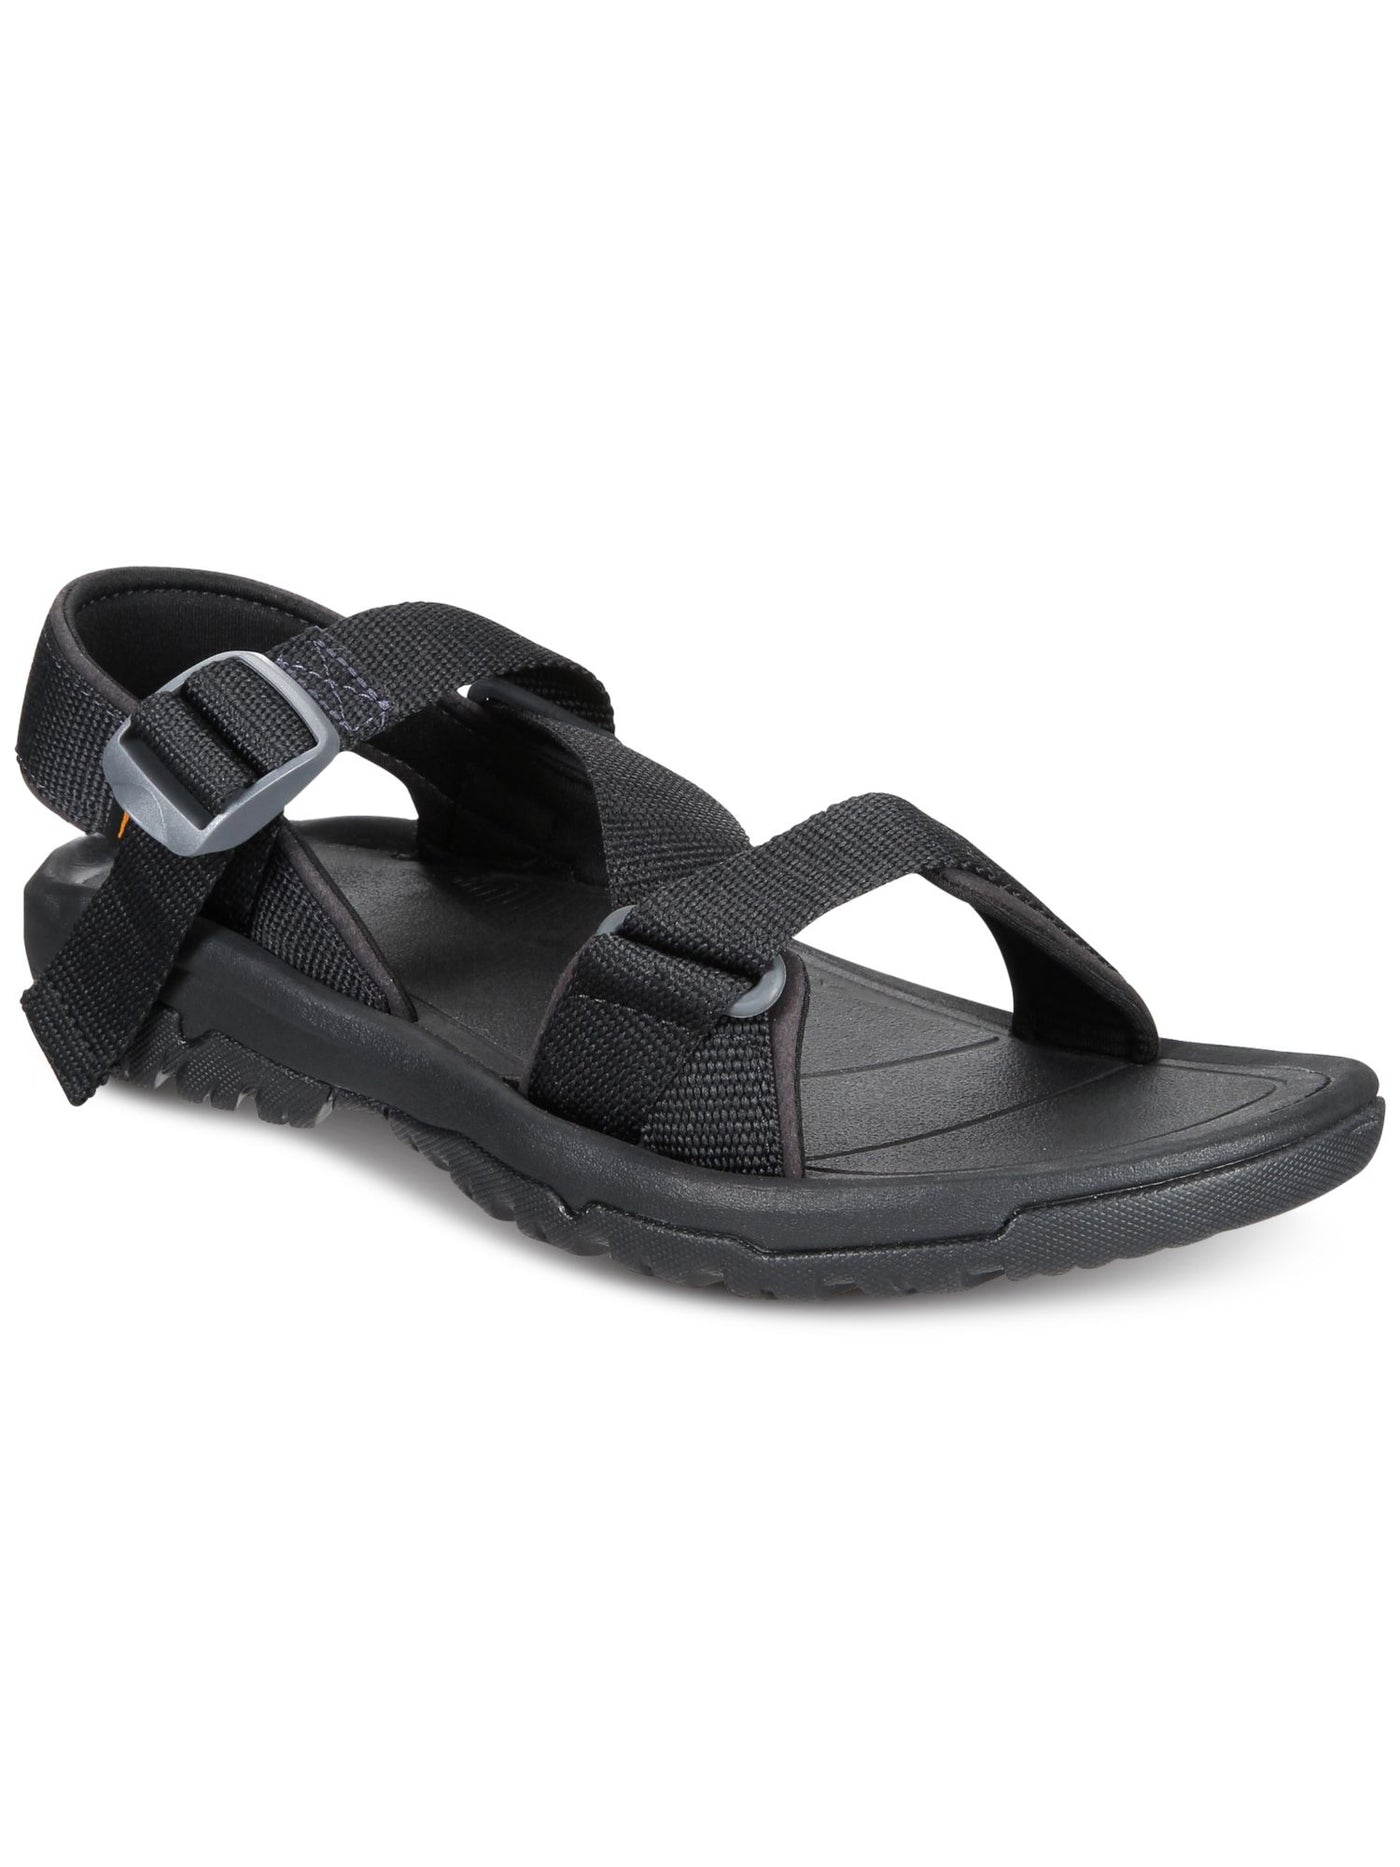 TEVA Mens Black Padded Water Resistant Non-Slip Hurricane Xlt2 Open Toe Sandals Shoes 12